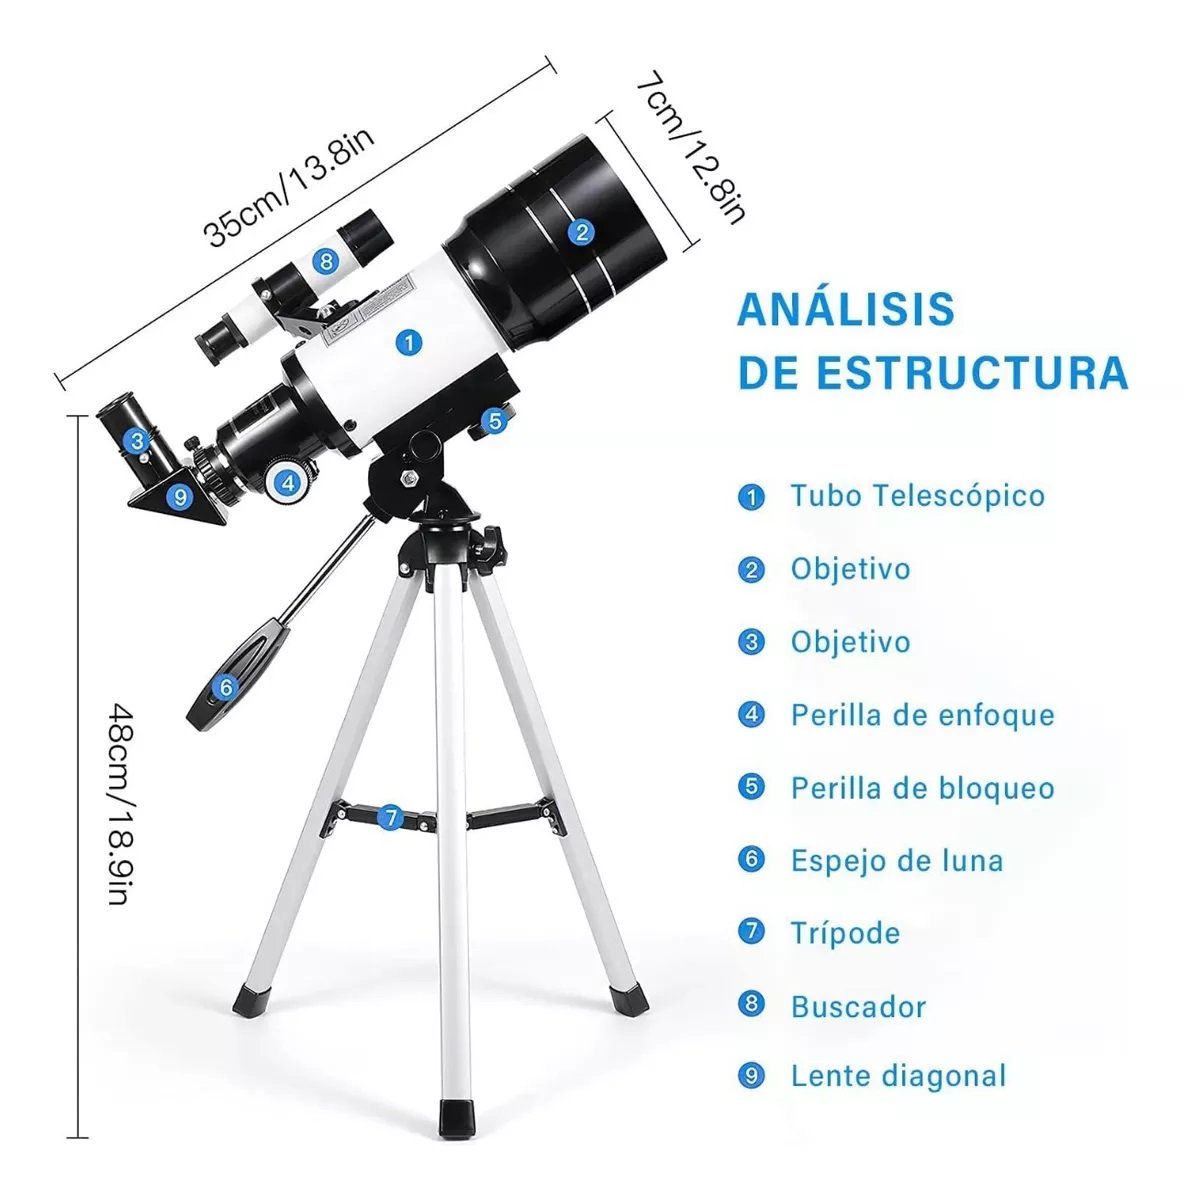 Telescopio astronómico portátil, telescopio refractor para niños y  principiantes de astronomía con trípode ligero, soporte para teléfono y  bolsa de